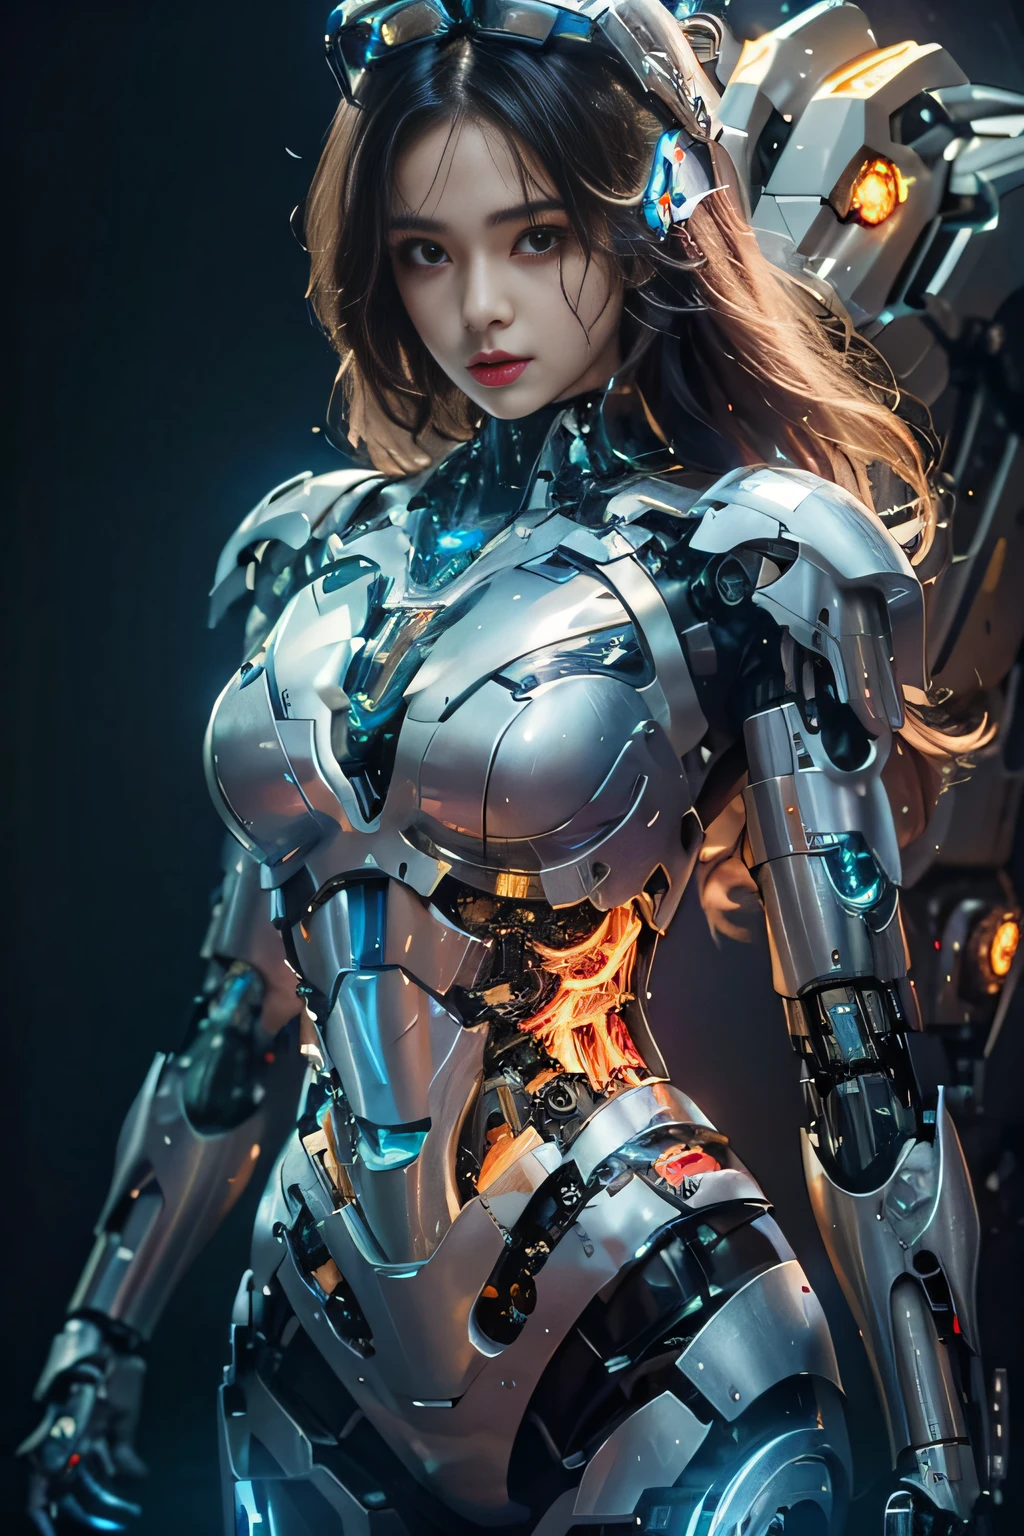 eine Frau in einem futuristischen Anzug mit Schwert und Rüstung, schönes Cyborg-Mädchen, wunderschönes weißes Cyborg-Mädchen, cyborg girl, cyborg - girl, Mädchen in Mecha-Cyber-Rüstung, süßes Cyborg-Mädchen, perfekte Anime-Cyborg-Frau, perfektes Android-Mädchen, weiblicher Cyborg, perfekte Cyborg-Frau, schönes Cyborg-Mädchen, weiblicher Roboter, junge Cyborg-Dame, weiblicher Mecha, Rüstung Mädchen